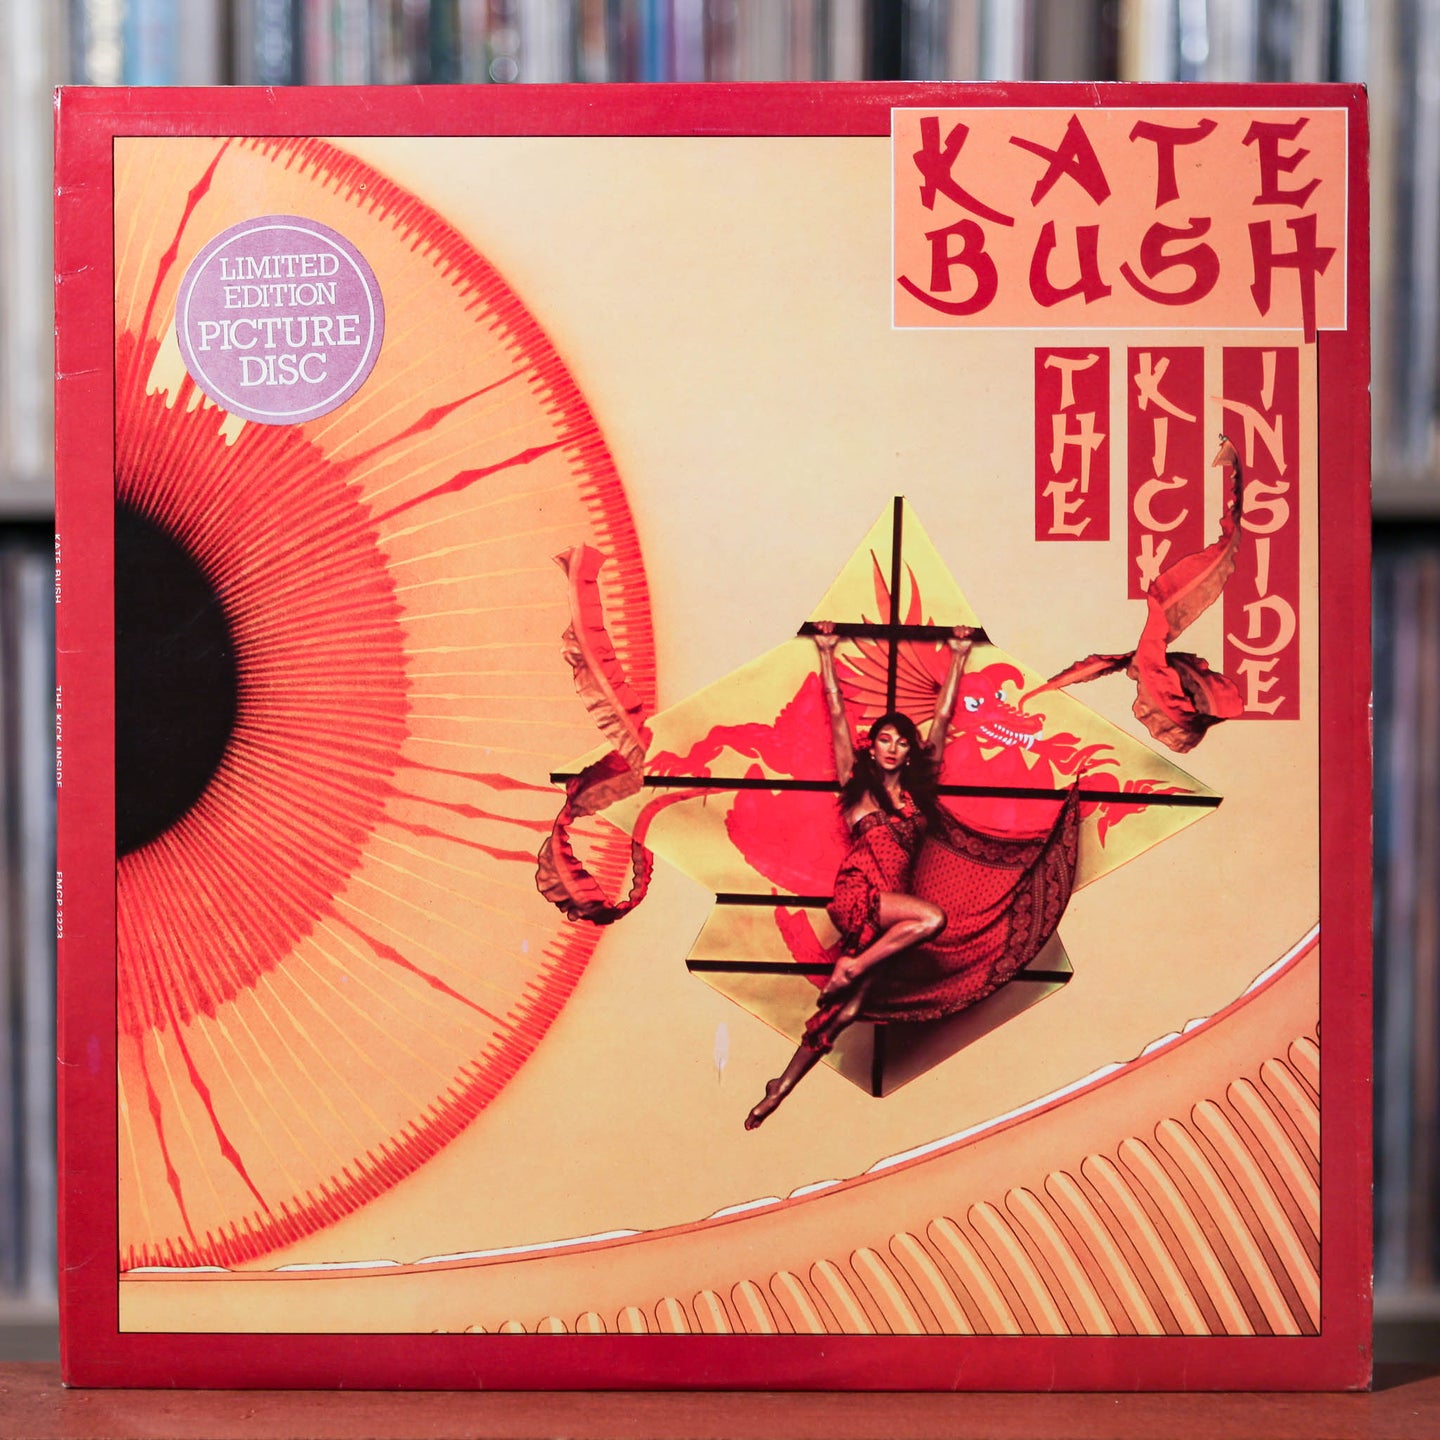 Kate Bush - The Kick Inside - Rare PIC DISC - UK Import - 1979 EMI America, VG+/EX